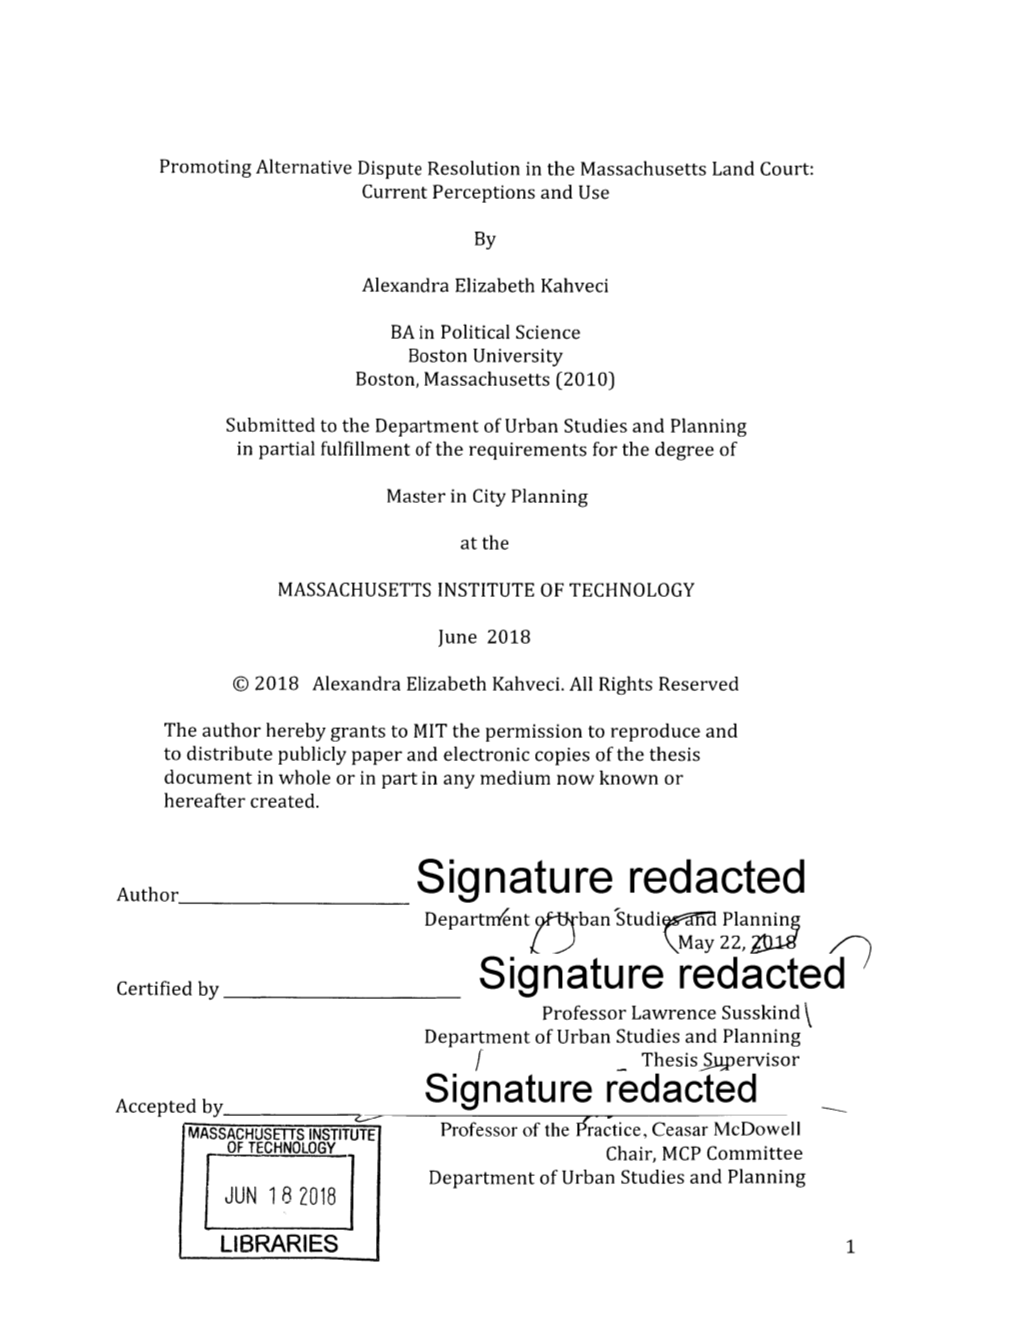 Signature Redacted Departn Ent Ban'studi 9Gna Plannin L) May 22,Tj1